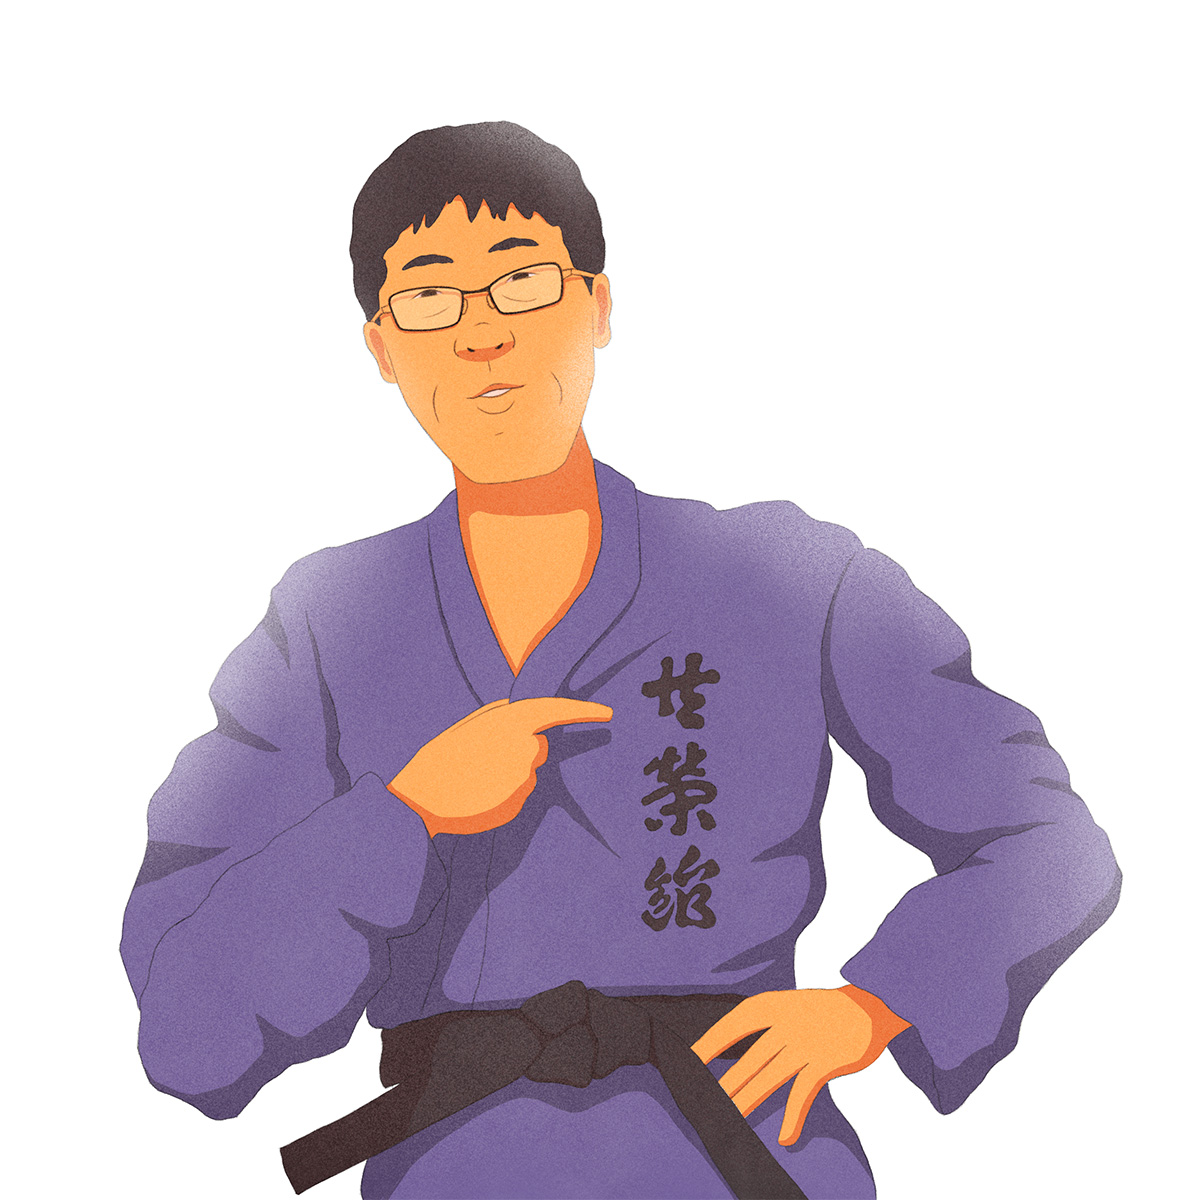 Ilustração do judoca Futoshi Urata, em kimono azul, apontando para ideogramas japoneses que estão escritos na sua vestimenta.